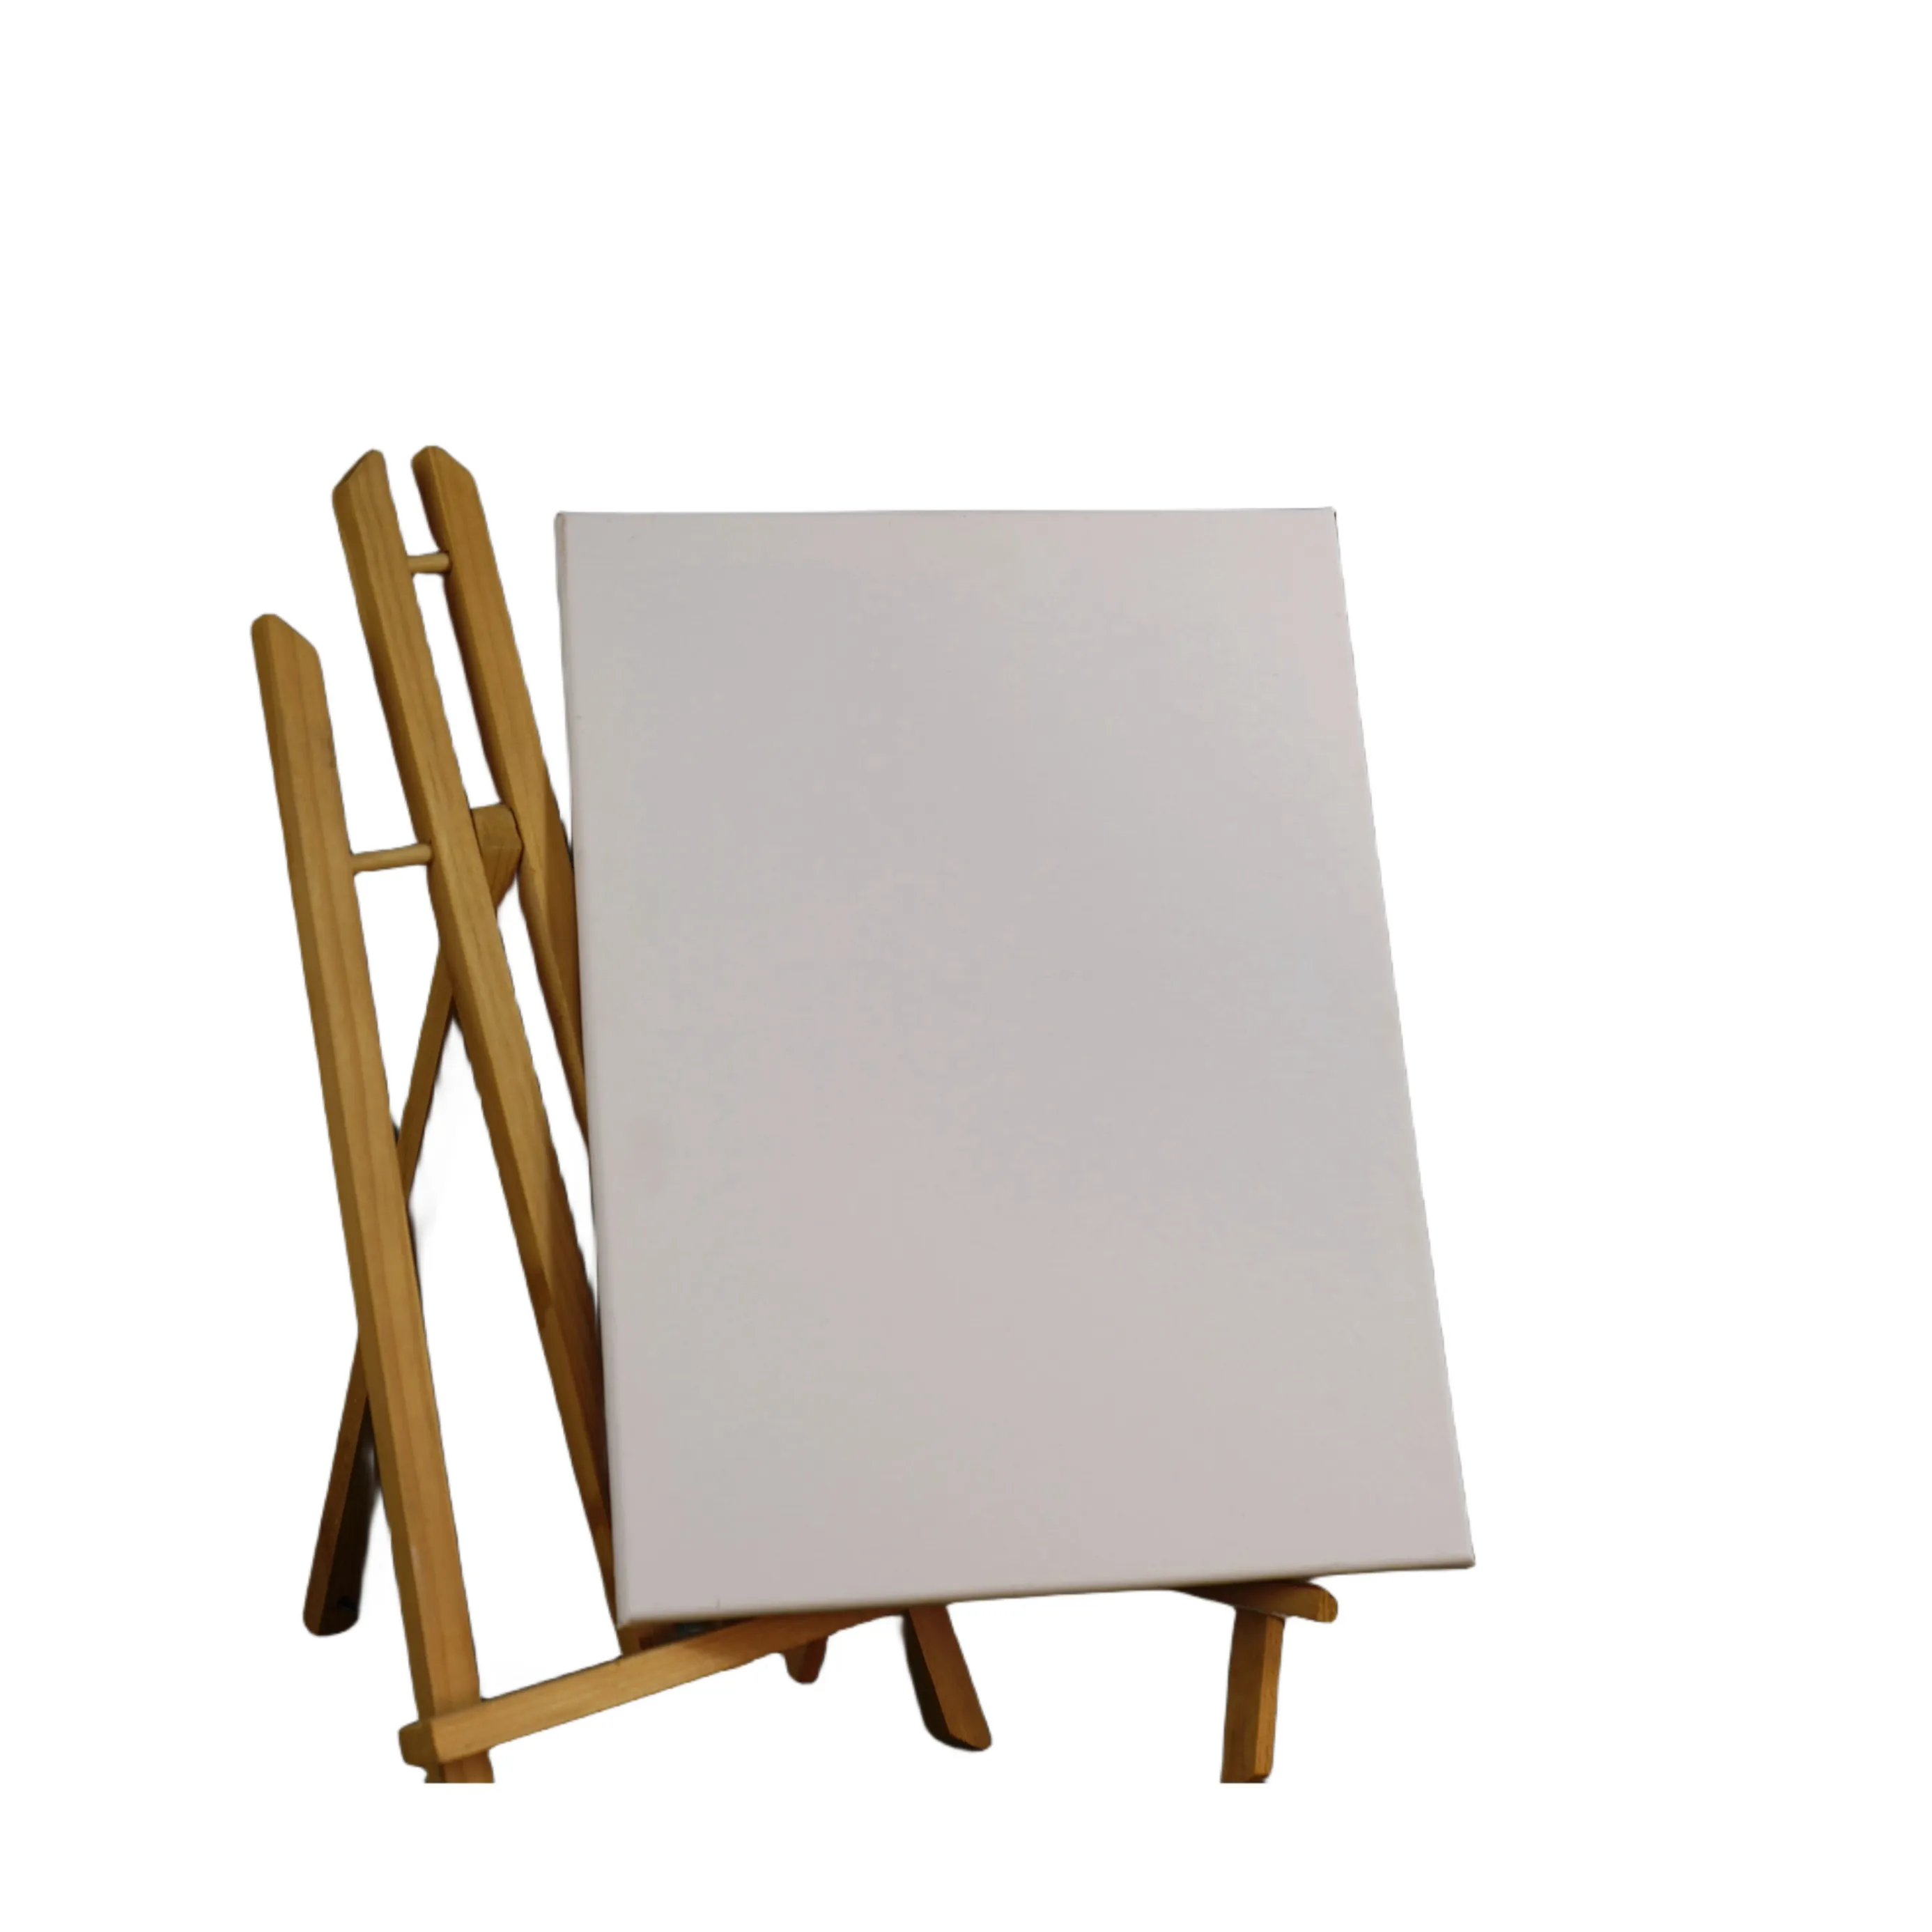 Tela bianca 40x50 tela allungata in bianco di dimensioni personalizzate con cornice in legno di pino per la pittura